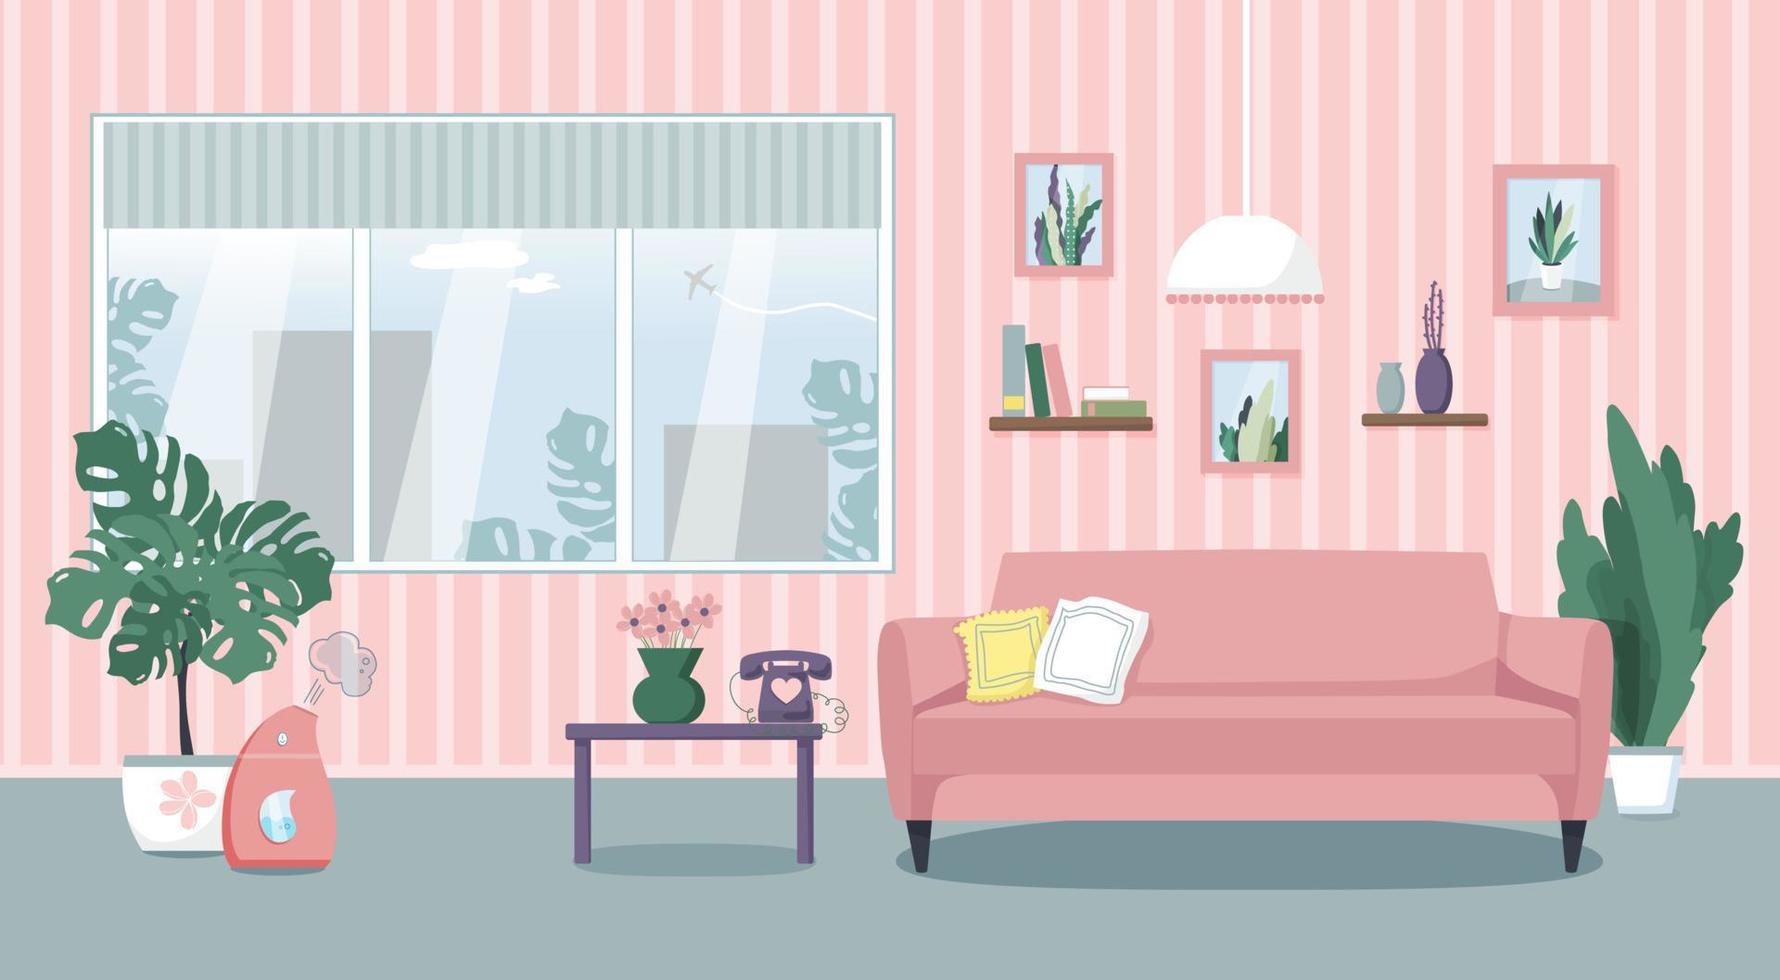 vectorillustratie van het interieur van de woonkamer. comfortabele bank, tafel, raam, kamerplanten, luchtbevochtiger. vlakke stijl. vector